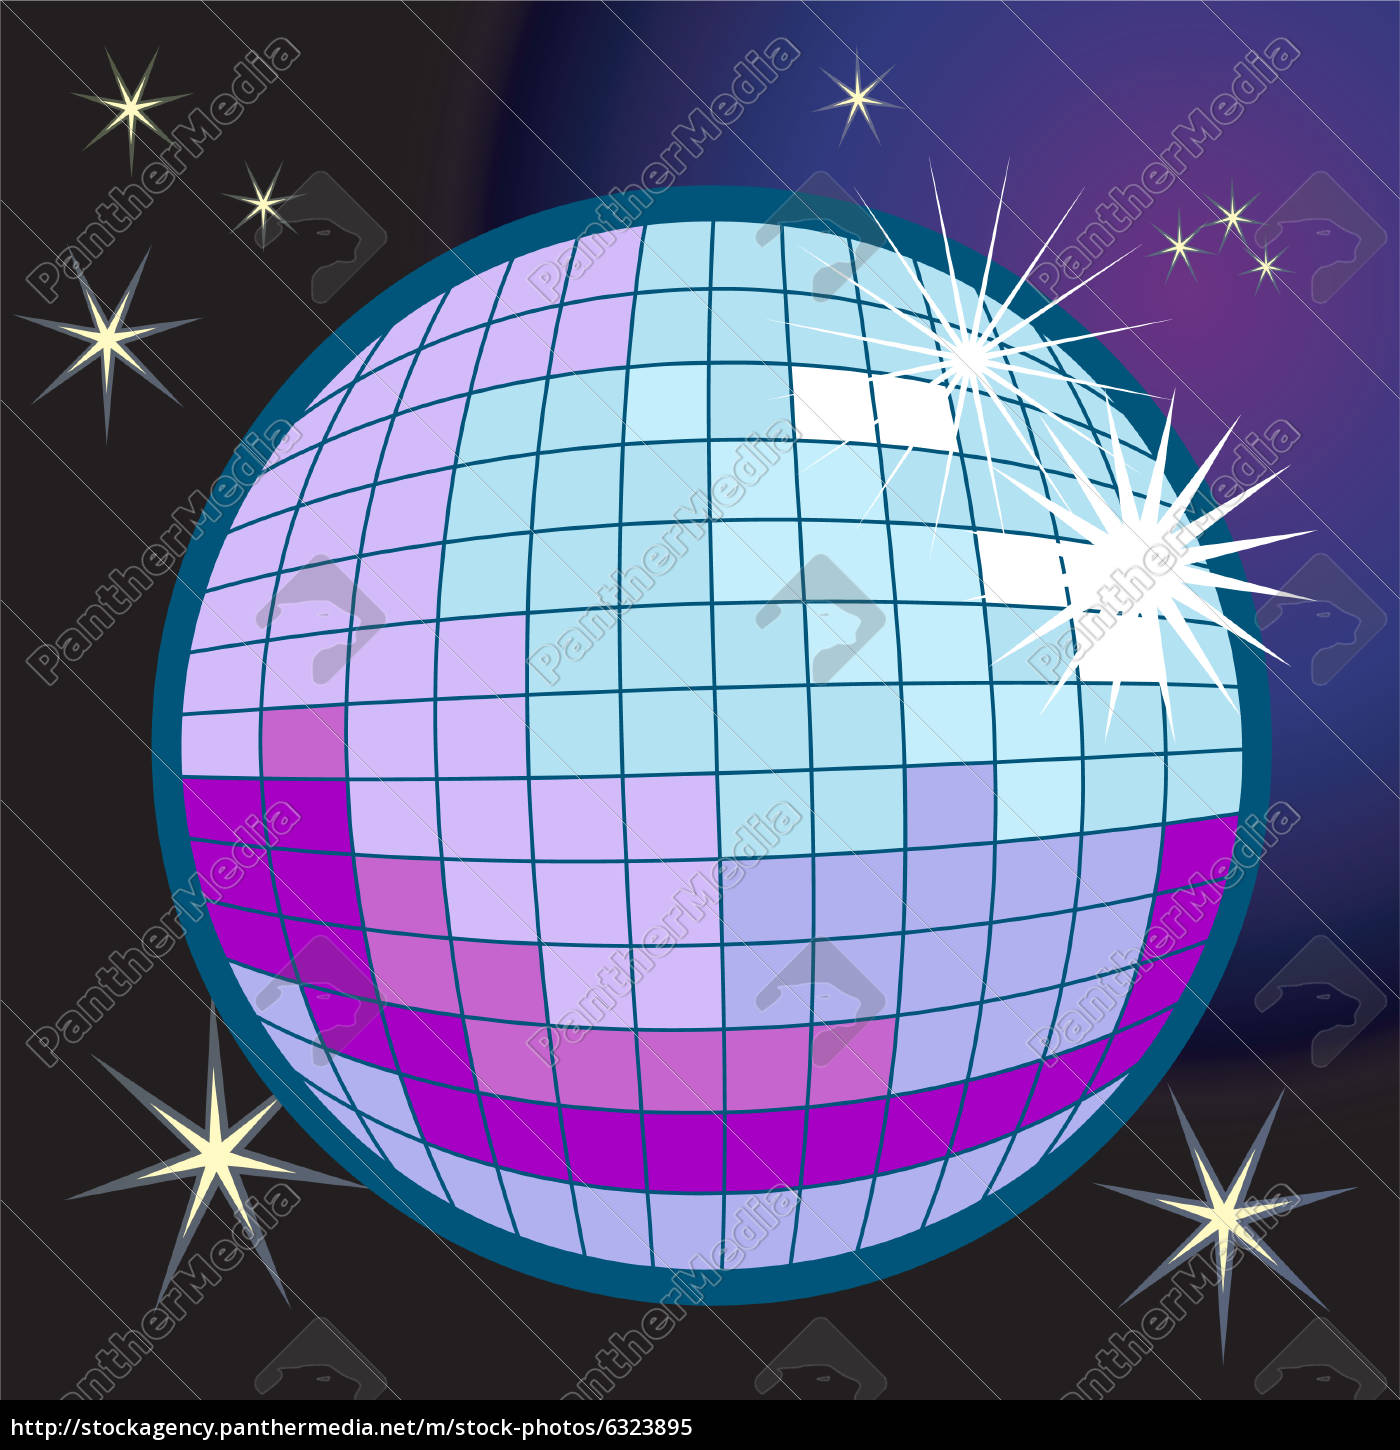 illustrazione palla discoteca - Stockphoto #6323895